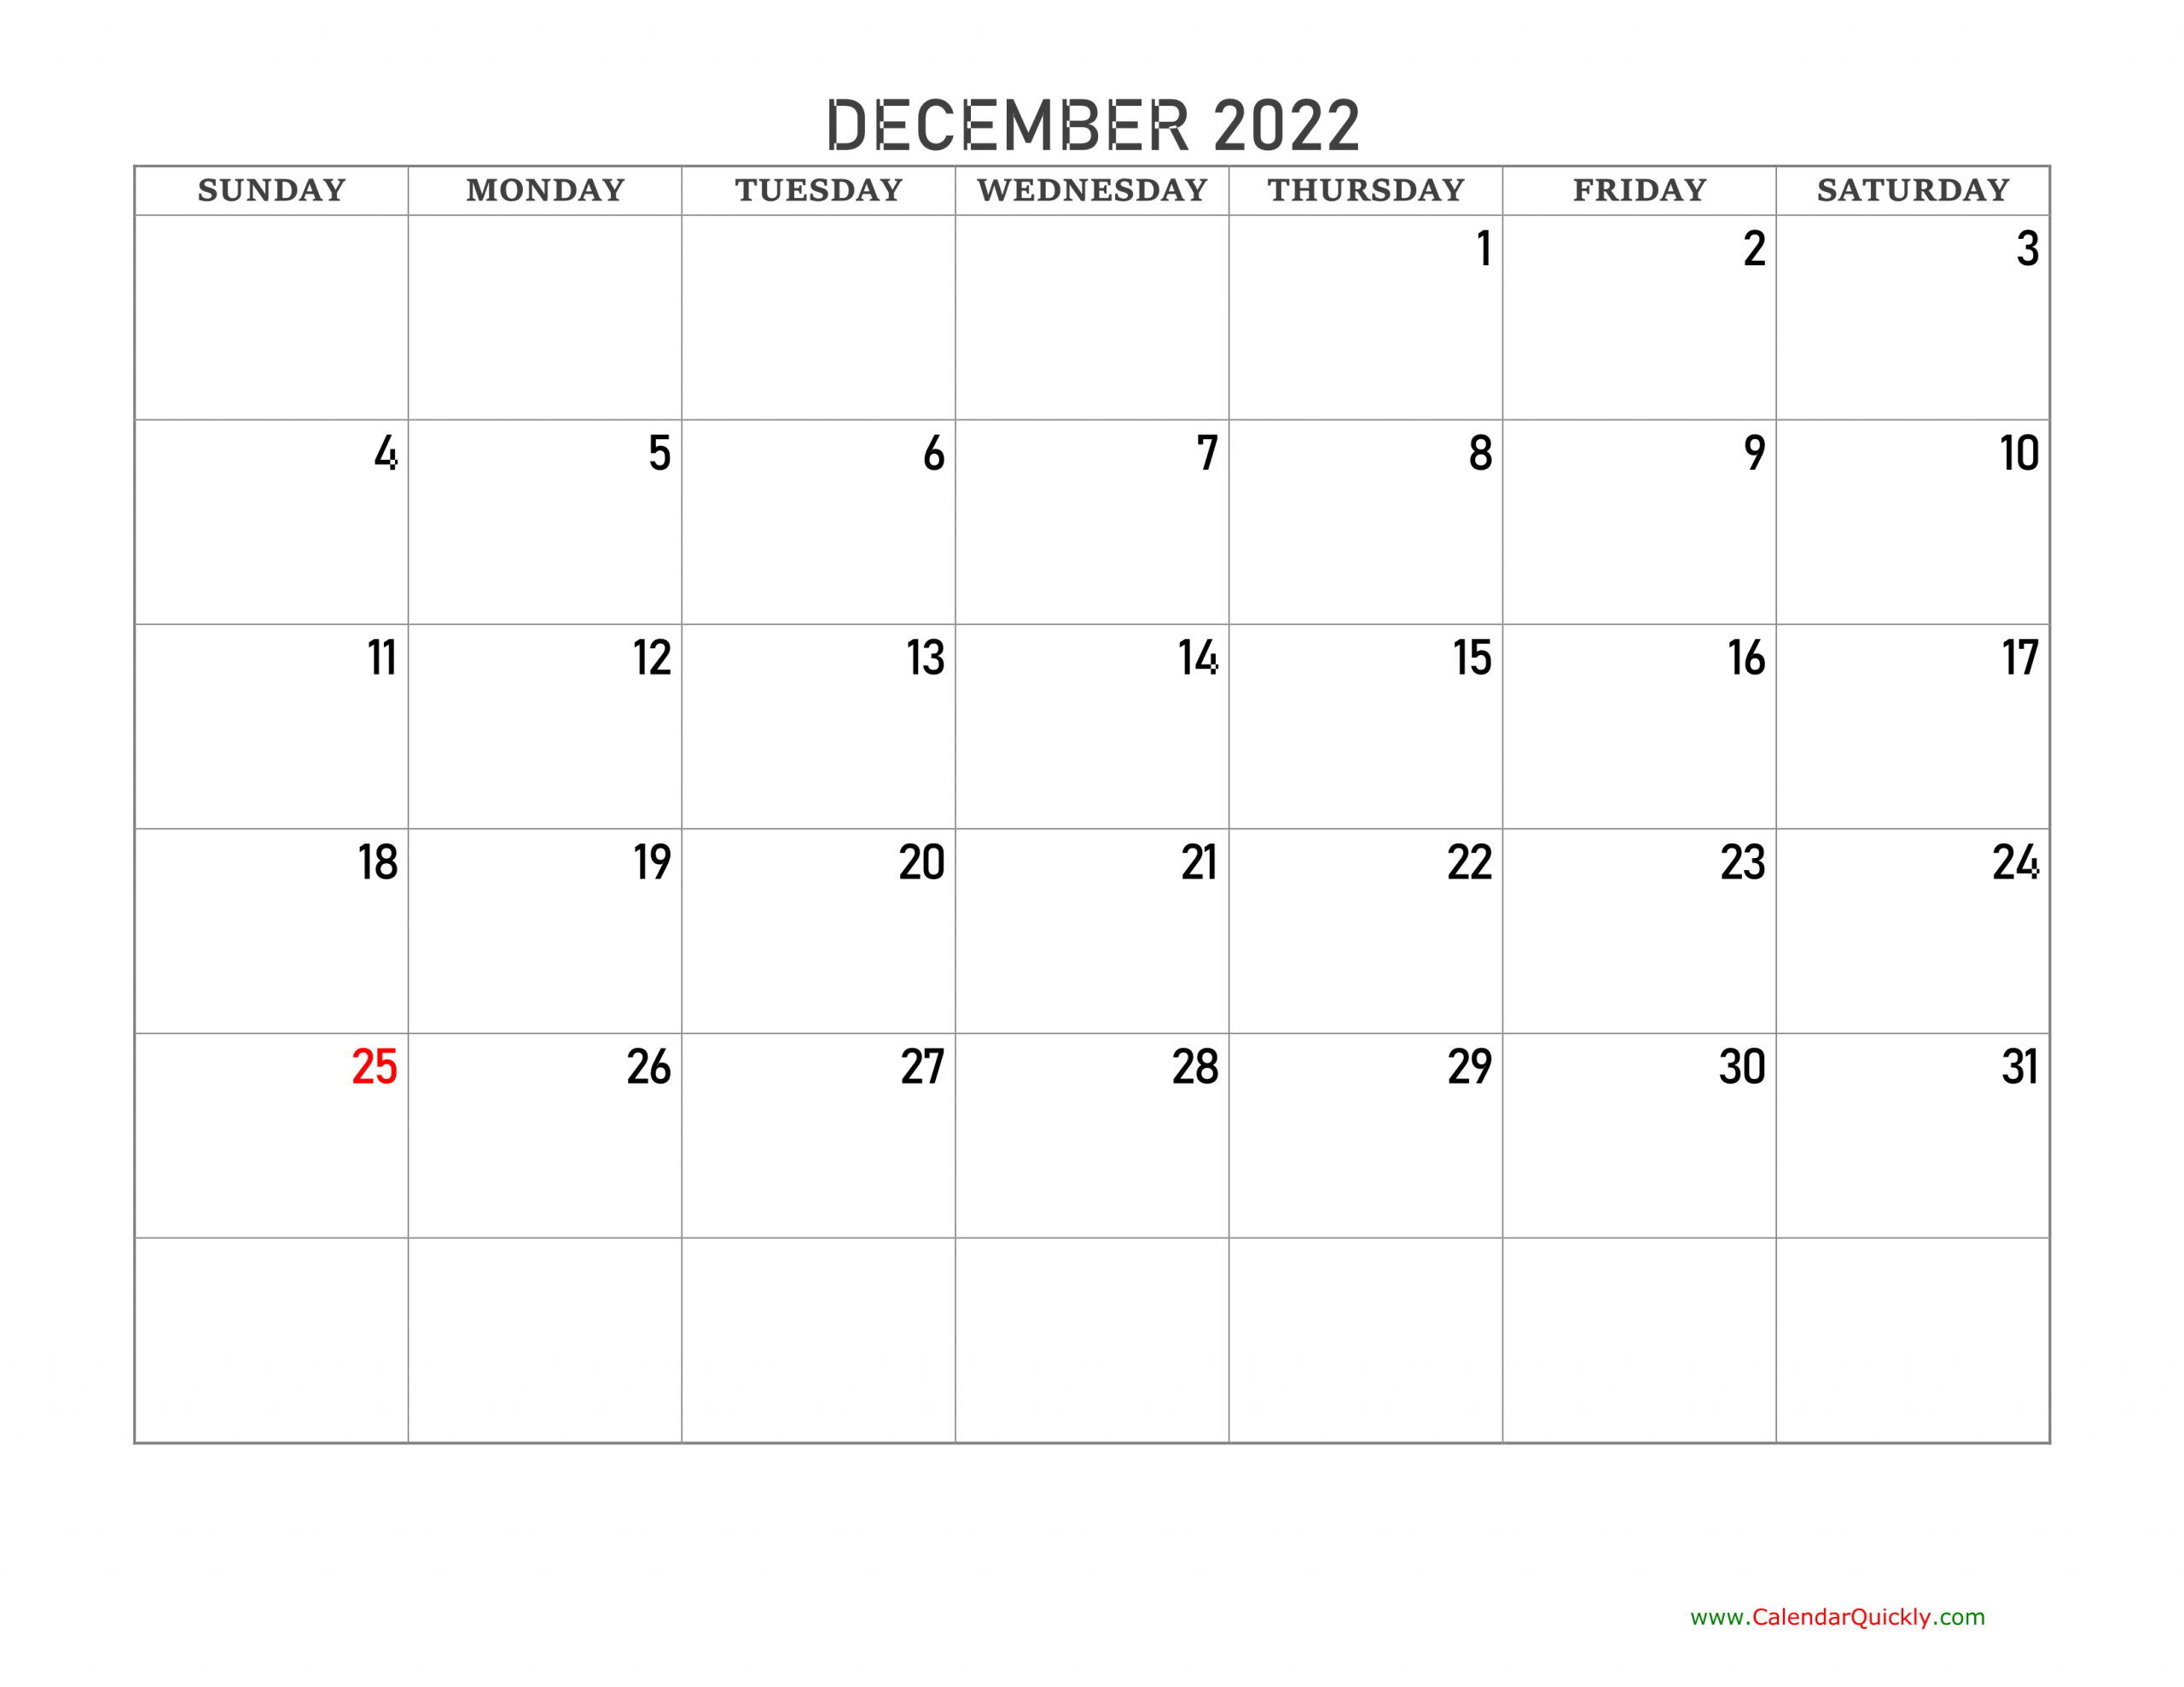 December 2022 Blank Calendar | Calendar Quickly December Printable Calendar 2022